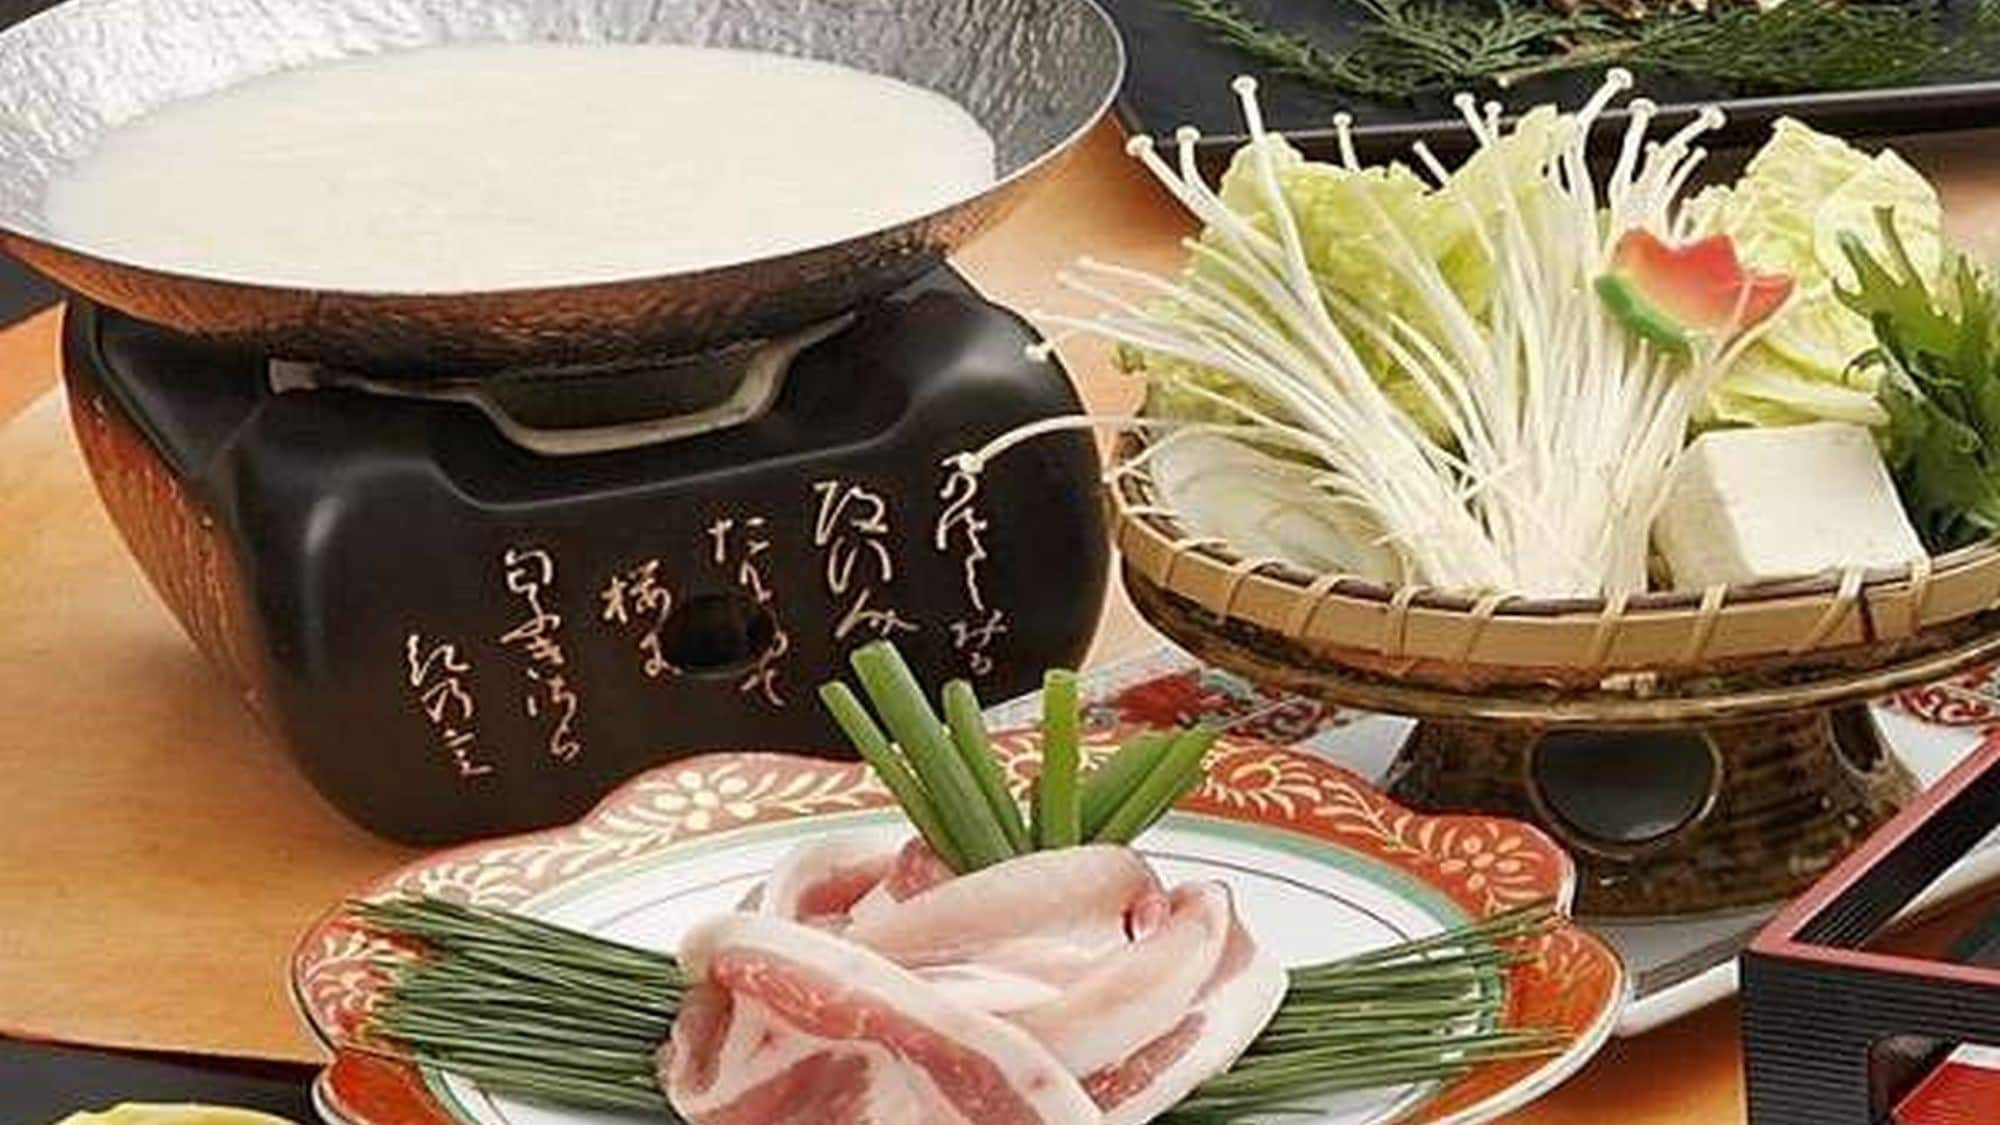 Anda dapat menikmati shabu-shabu susu kedelai dari kaiseki standar / babi merek "babi Shurei" (contoh satu hari)